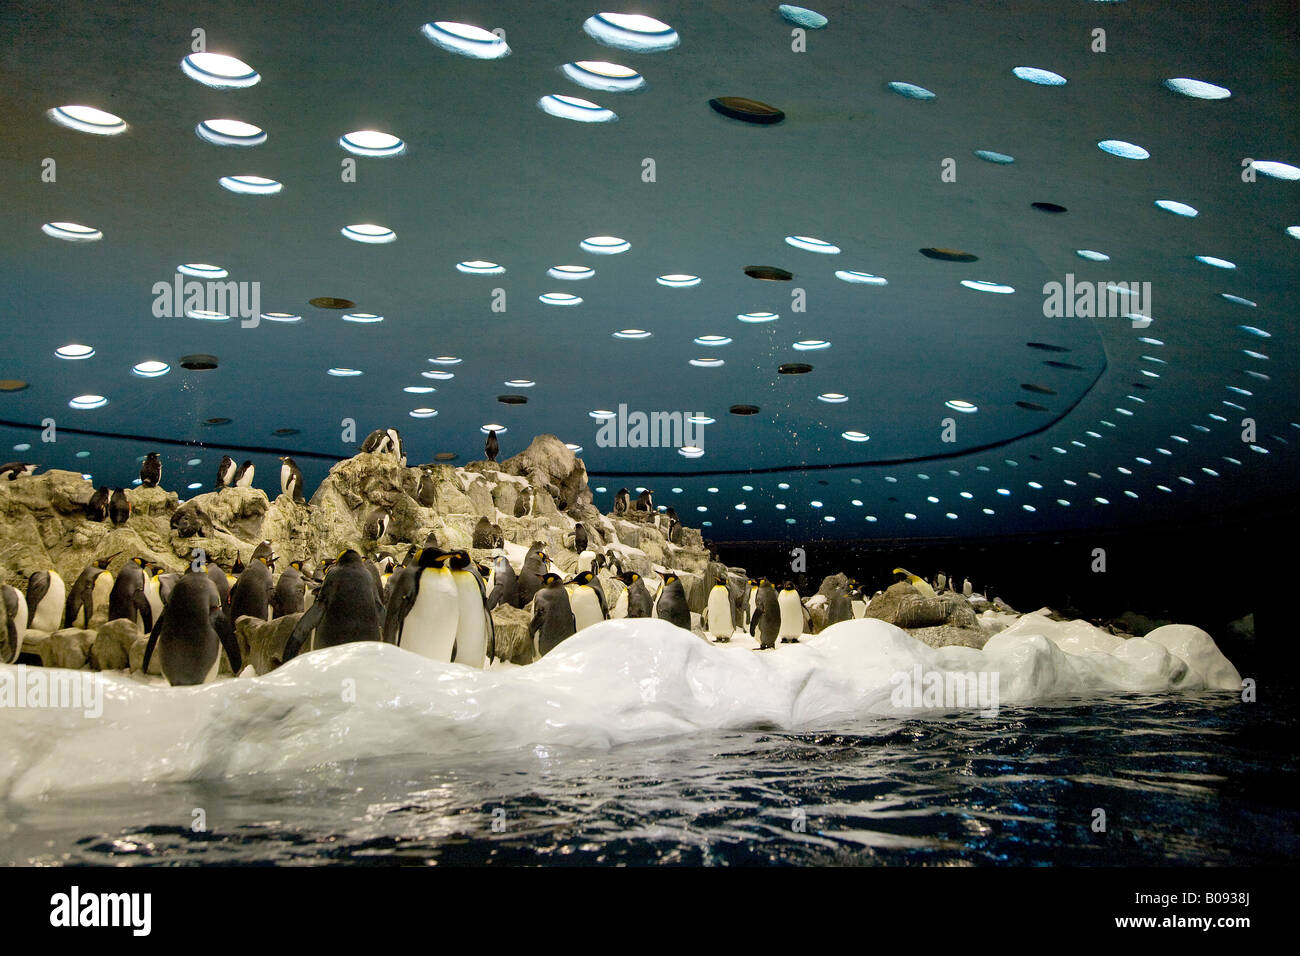 Pinguini imperatore (Aptenodytes patagonicus) al pianeta Penguin Aquarium, Loro Parque Tenerife, Isole Canarie, Spagna Foto Stock